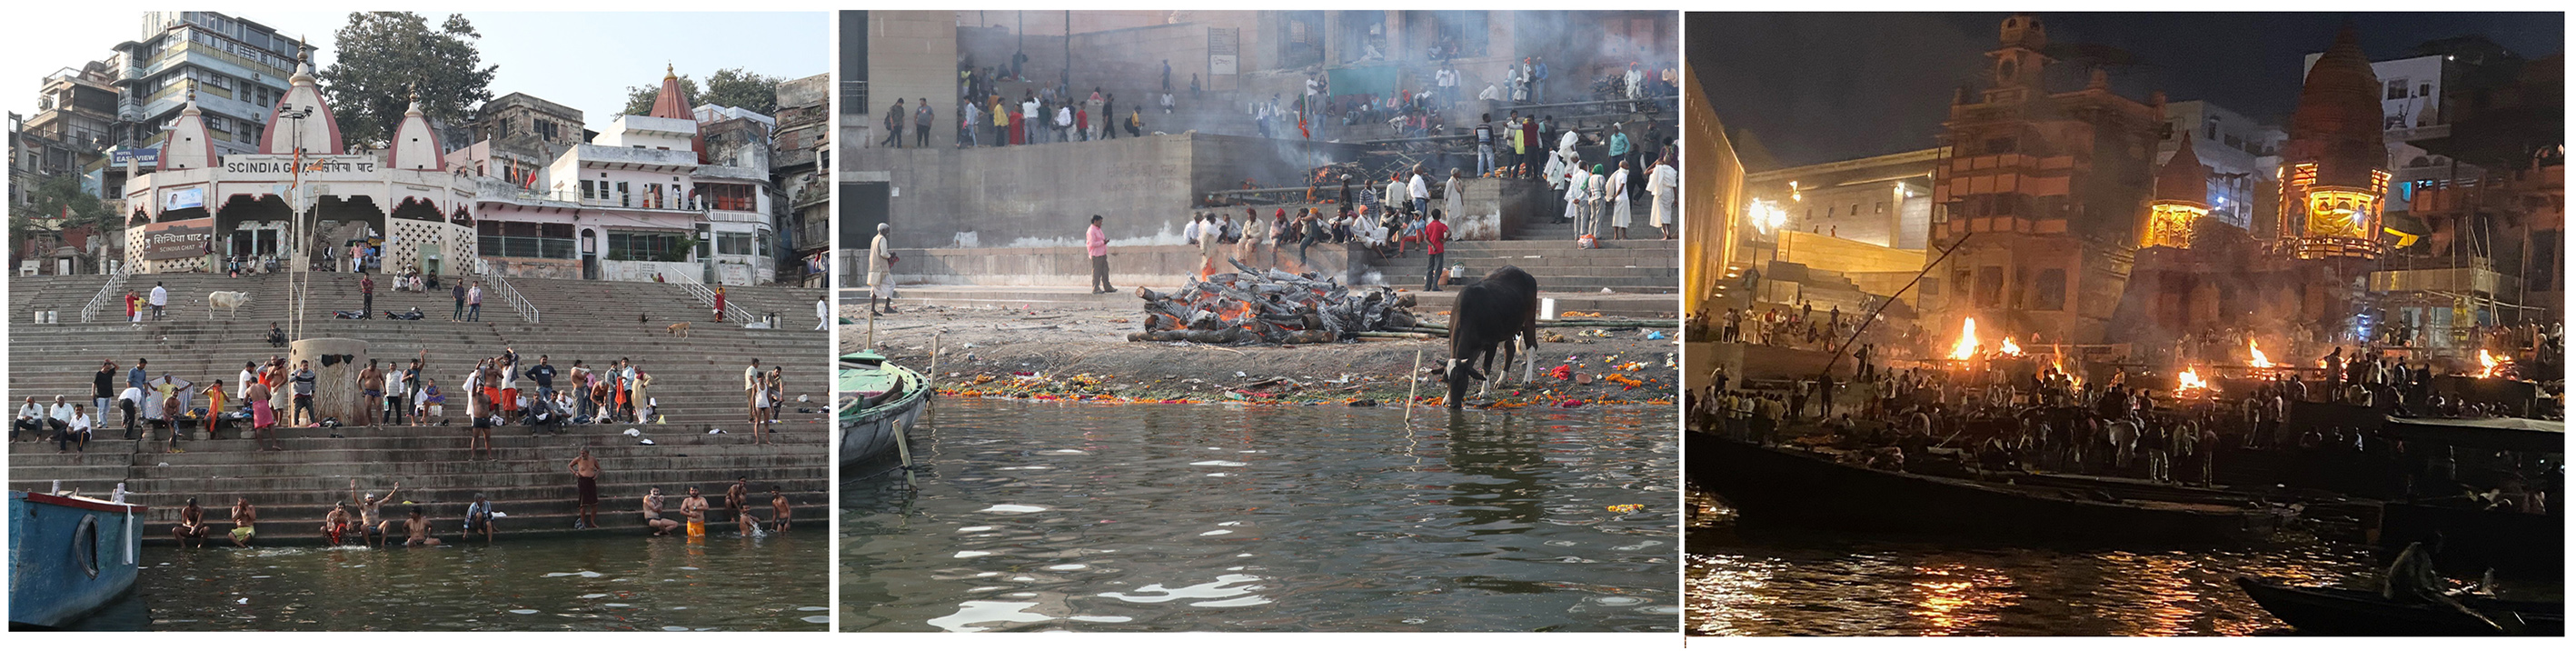 Theo tín ngưỡng Hindu, tắm trên sông Hằng sẽ gột rửa mọi tội lỗi, được hỏa táng và thả xuống sông Hằng là một vinh dự lớn.